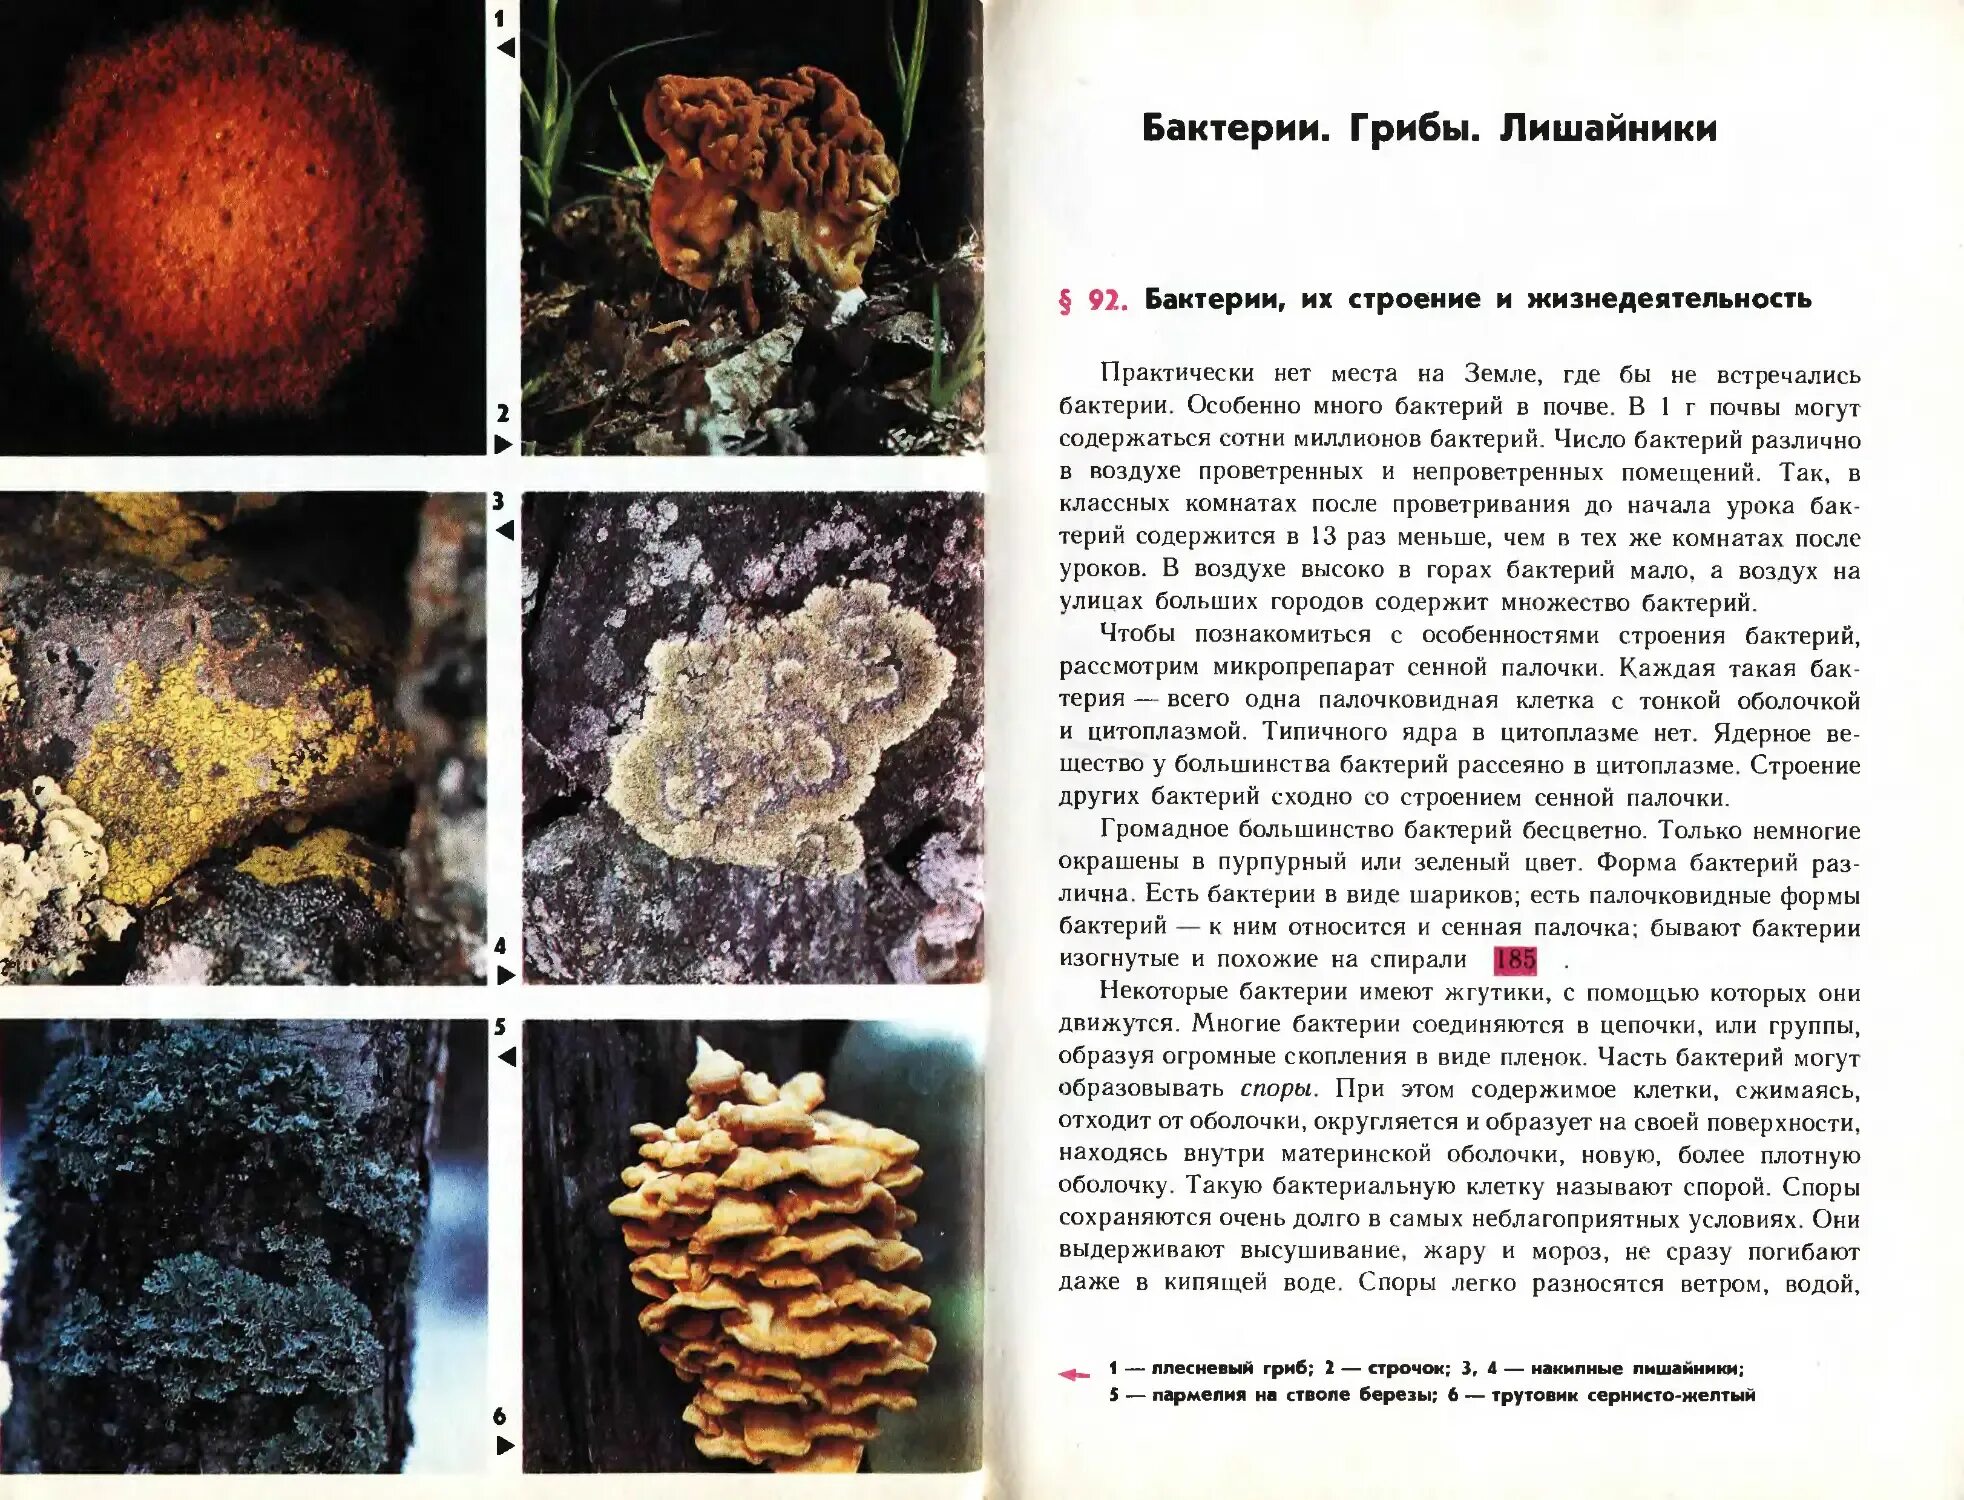 Грибы в лишайниках какие функции. Бактерии грибы лишайники. Грибы и бактерии. Бактерии грибы лишайники таблица. Бактерии грибы лишайники сравнительная таблица.